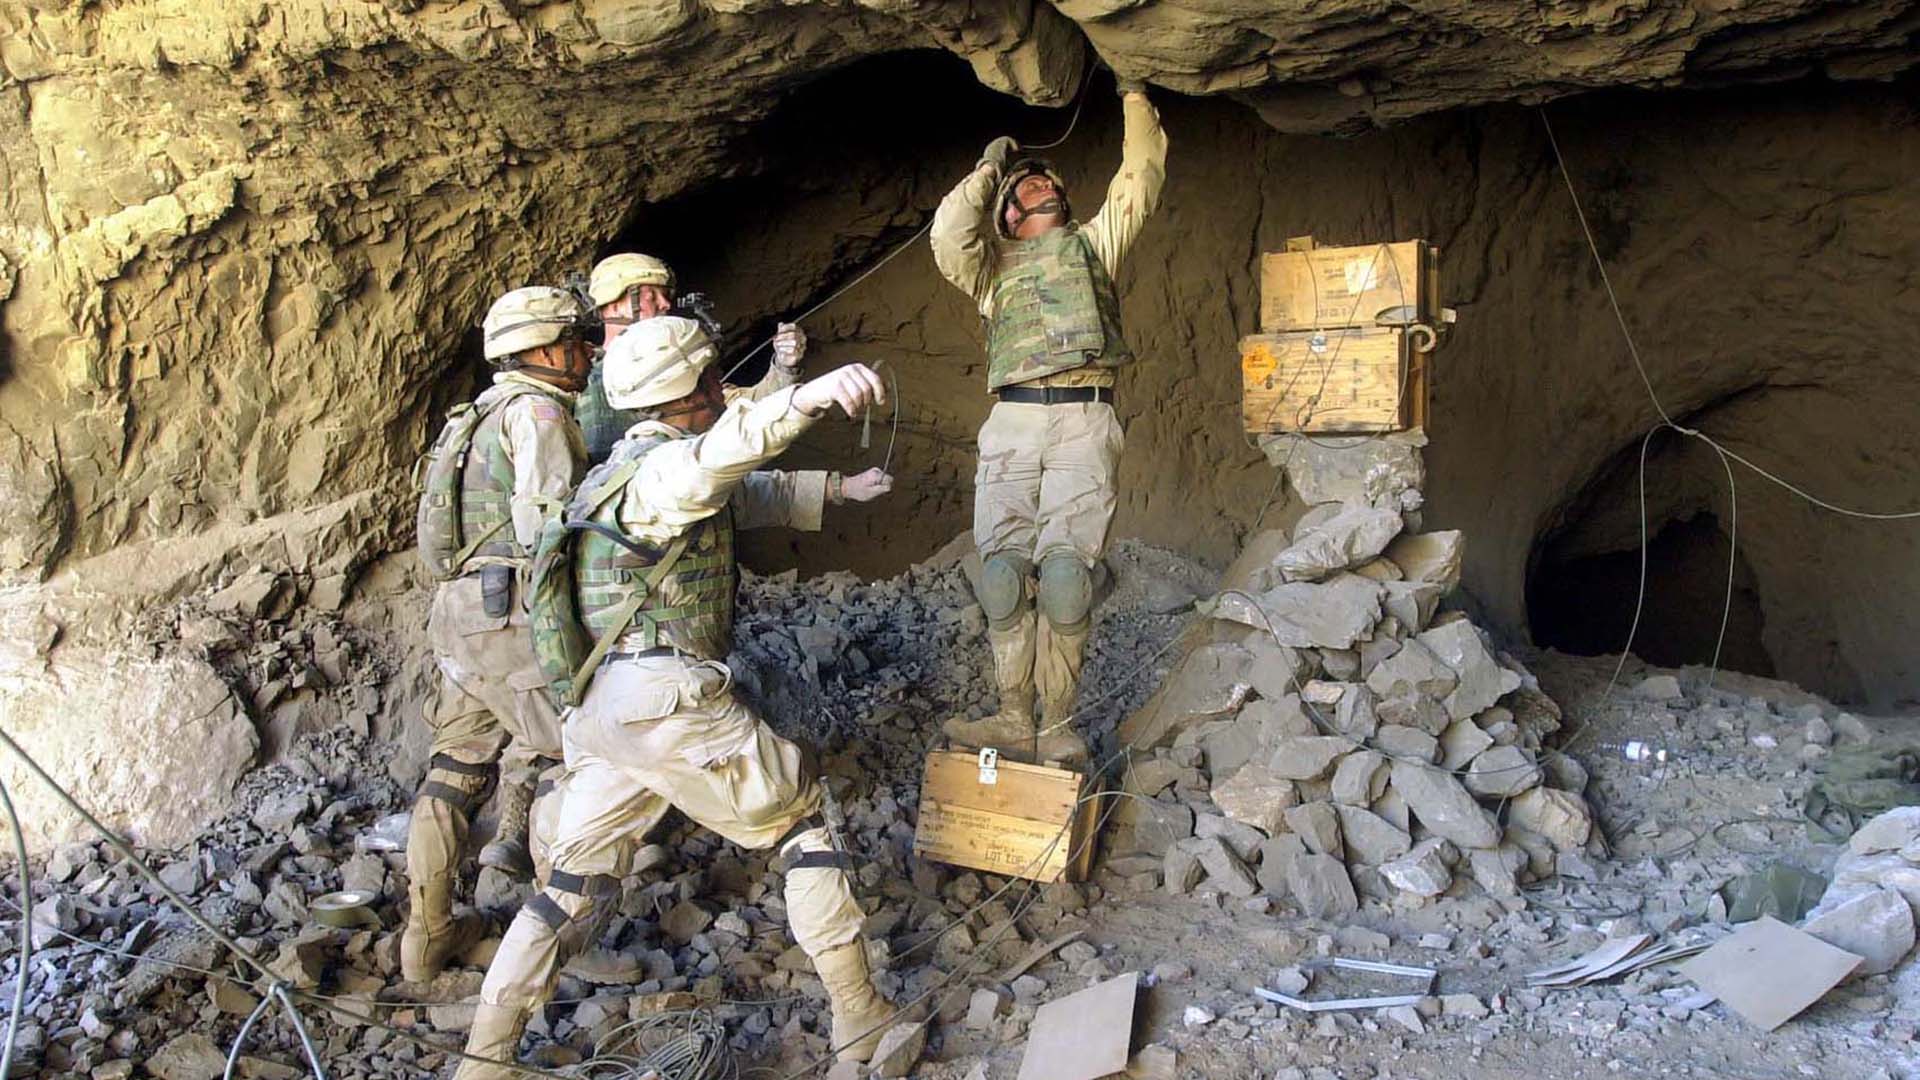 Ingenieros de la Compañía Bravo, 2 ° Batallón, 504 ° Regimiento de Infantería de Paracaidistas del 82 ° Aerotransportado del Ejército de los EE. UU., colocaron explosivos dentro de un escondite de presuntos terroristas durante una operación de limpieza de cuevas el 1 de febrero de 2003 (AFP PHOTO / Eugene Hoshiko)